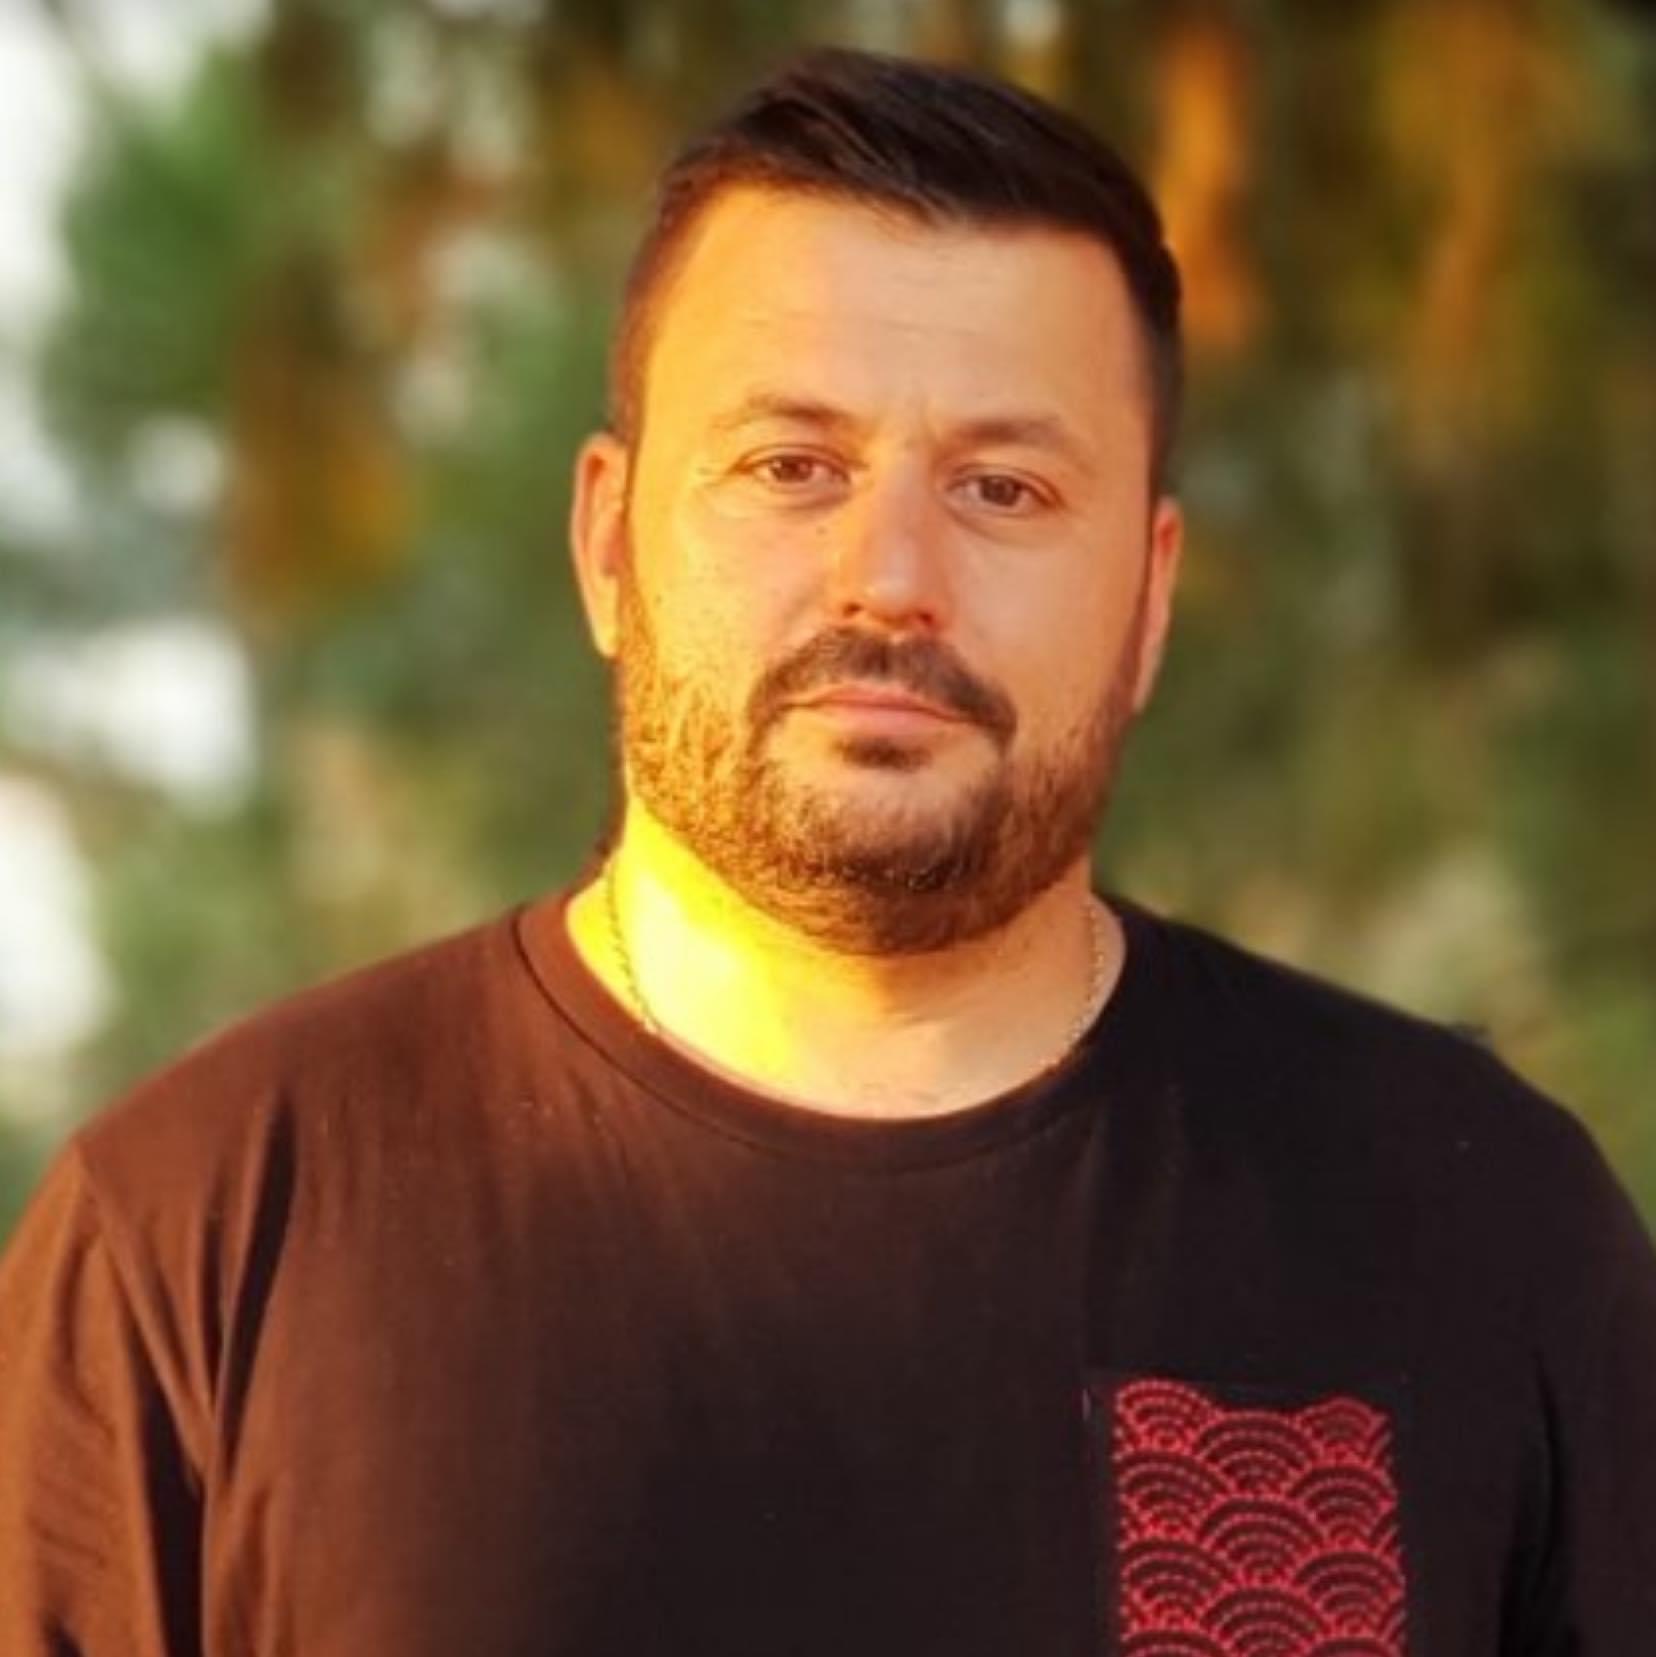 Πρόεδρος εστίασης στο evima.gr: «Δεν είναι στα σχέδια μου δημοτικό ψηφοδέλτιο»